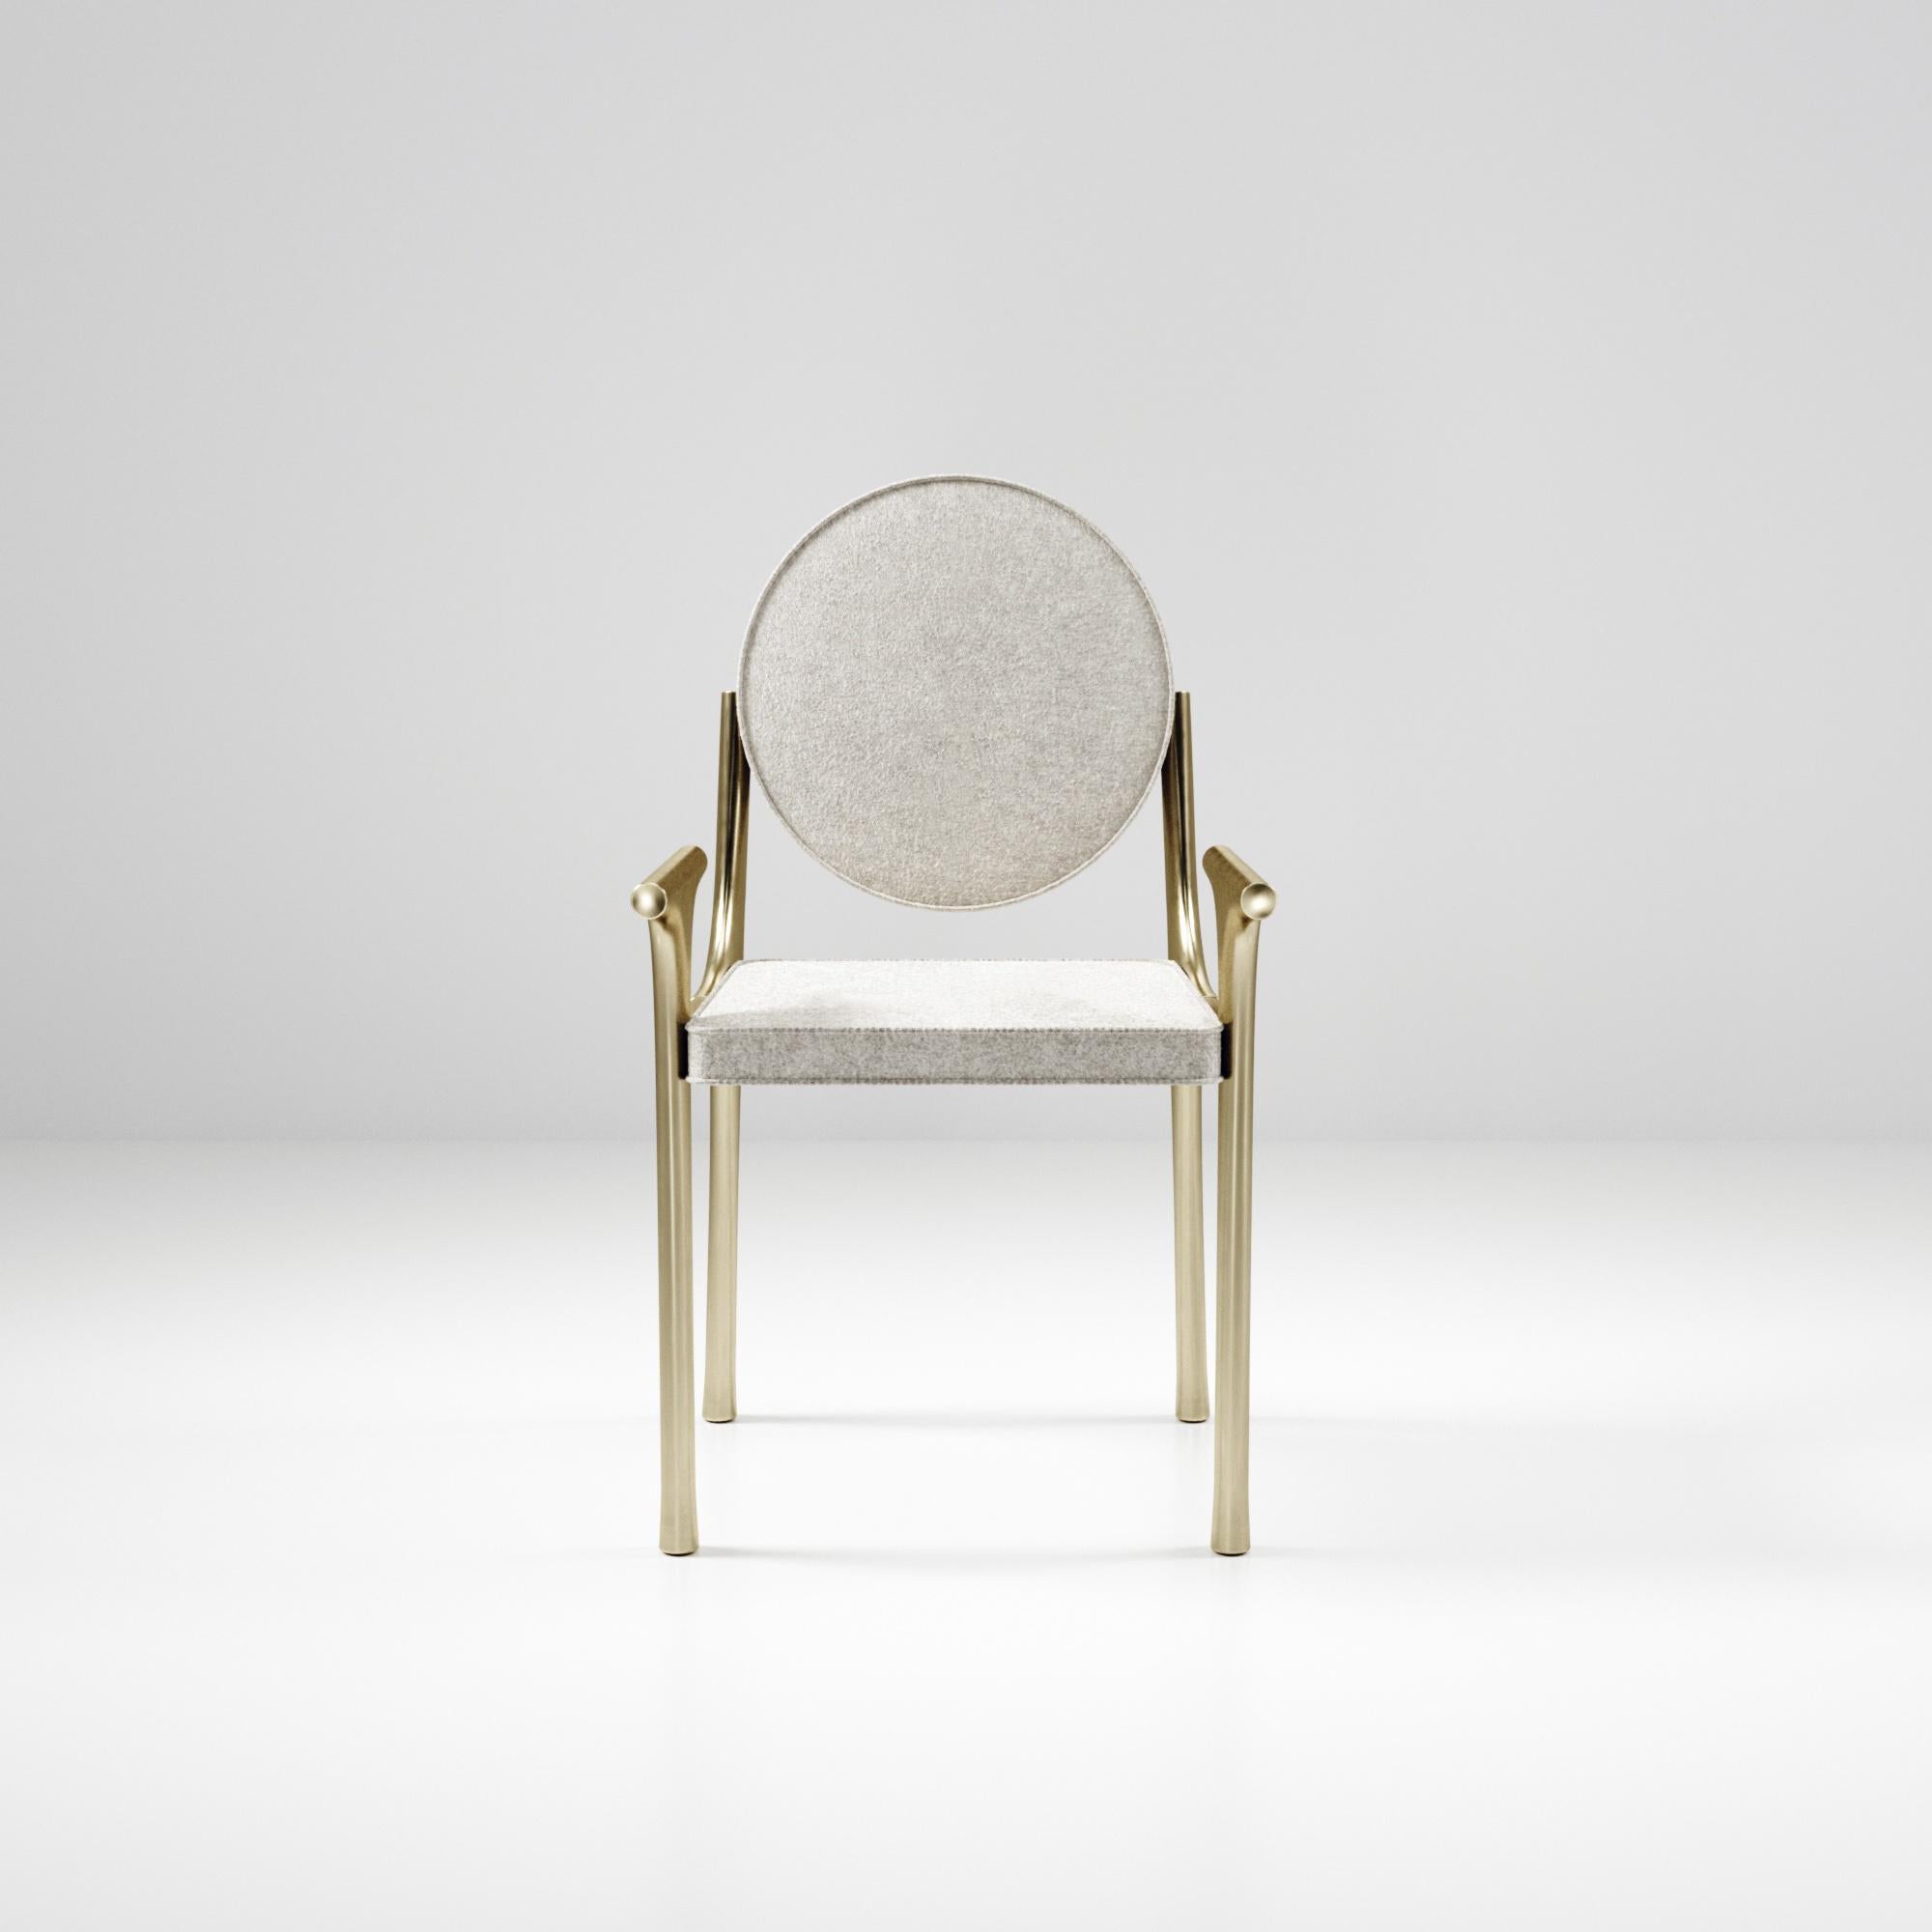 La chaise Ramo de R & Y Augousti est une pièce élégante et polyvalente. La pièce rembourrée offre un confort tout en conservant une esthétique unique avec le cadre et les détails en laiton bronze-patina. Le prix de cette liste est fixé pour la